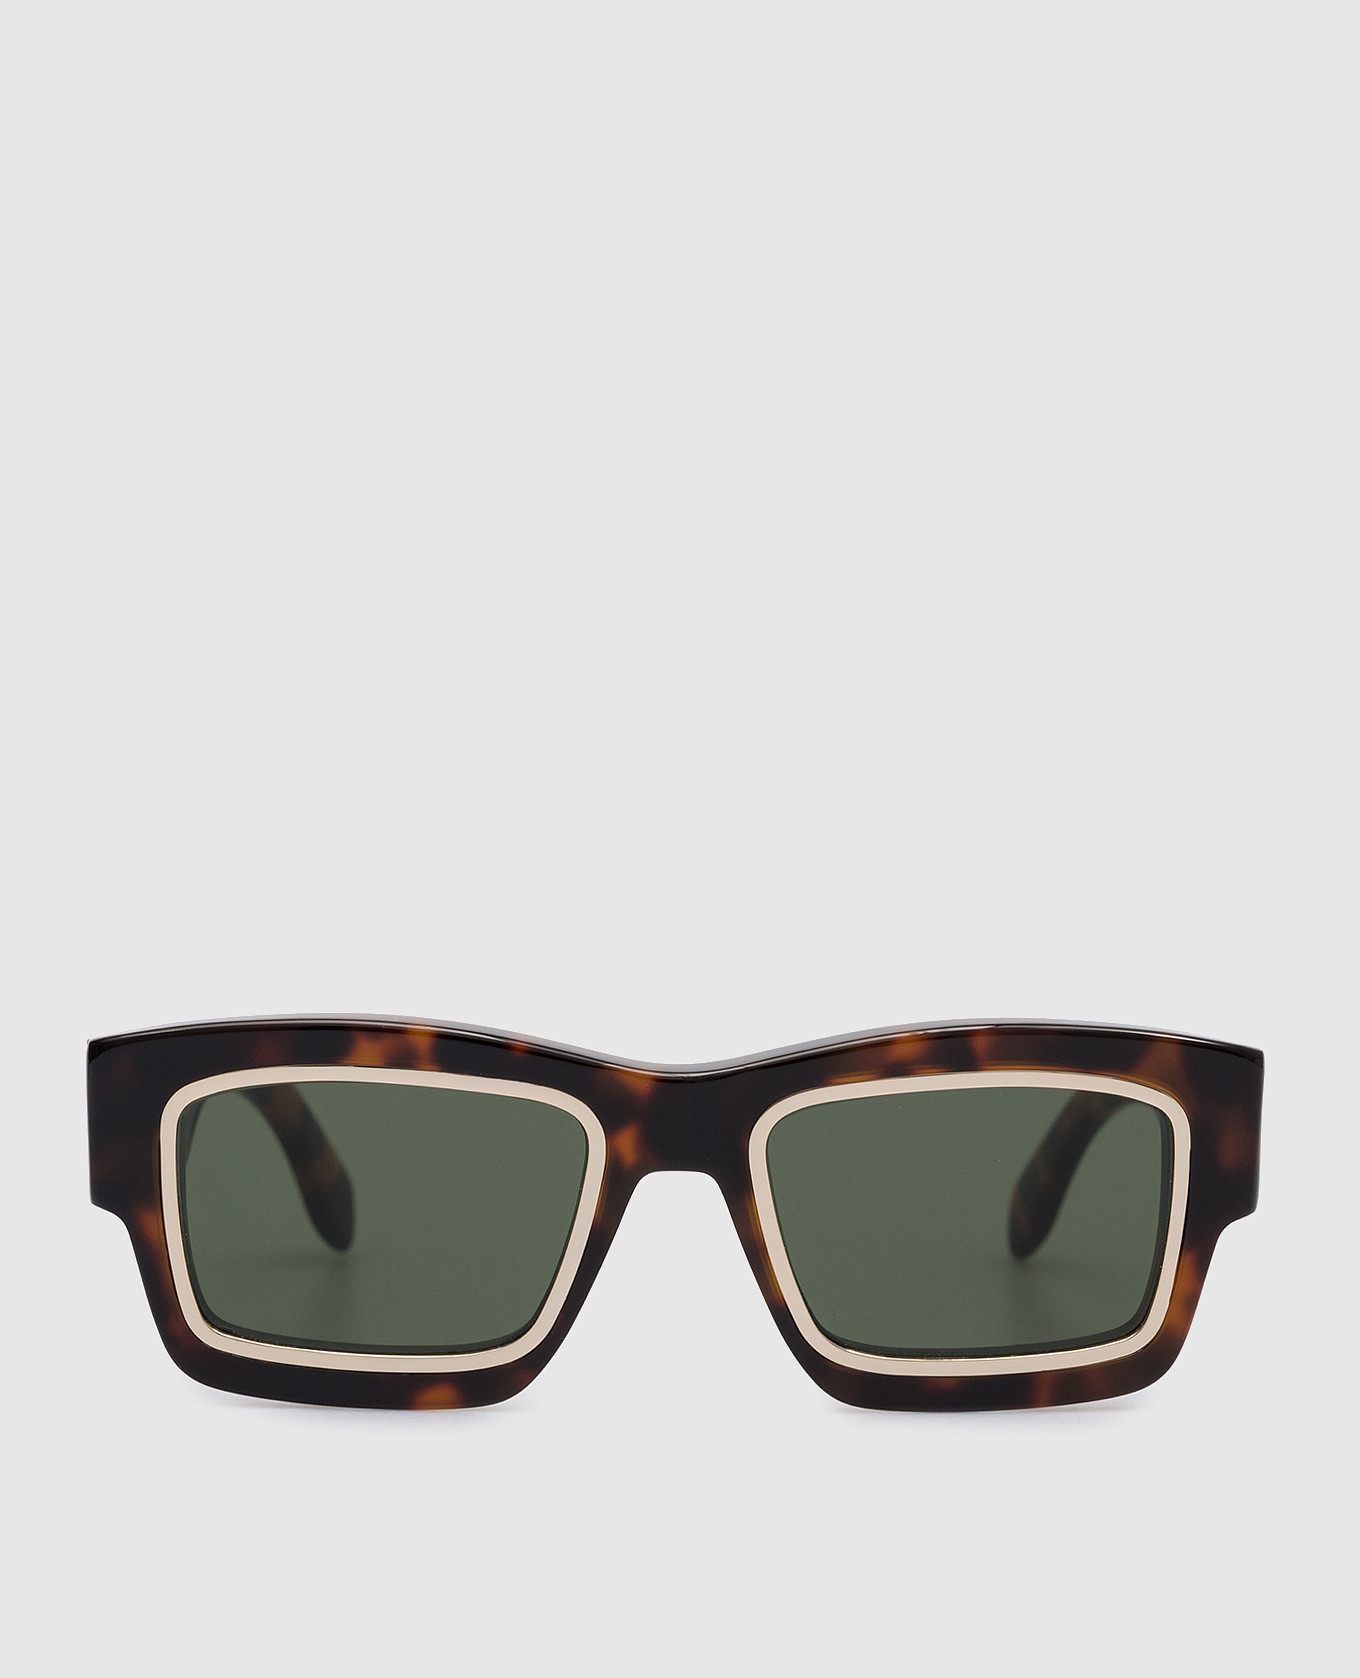 Raymond sunglasses in brown